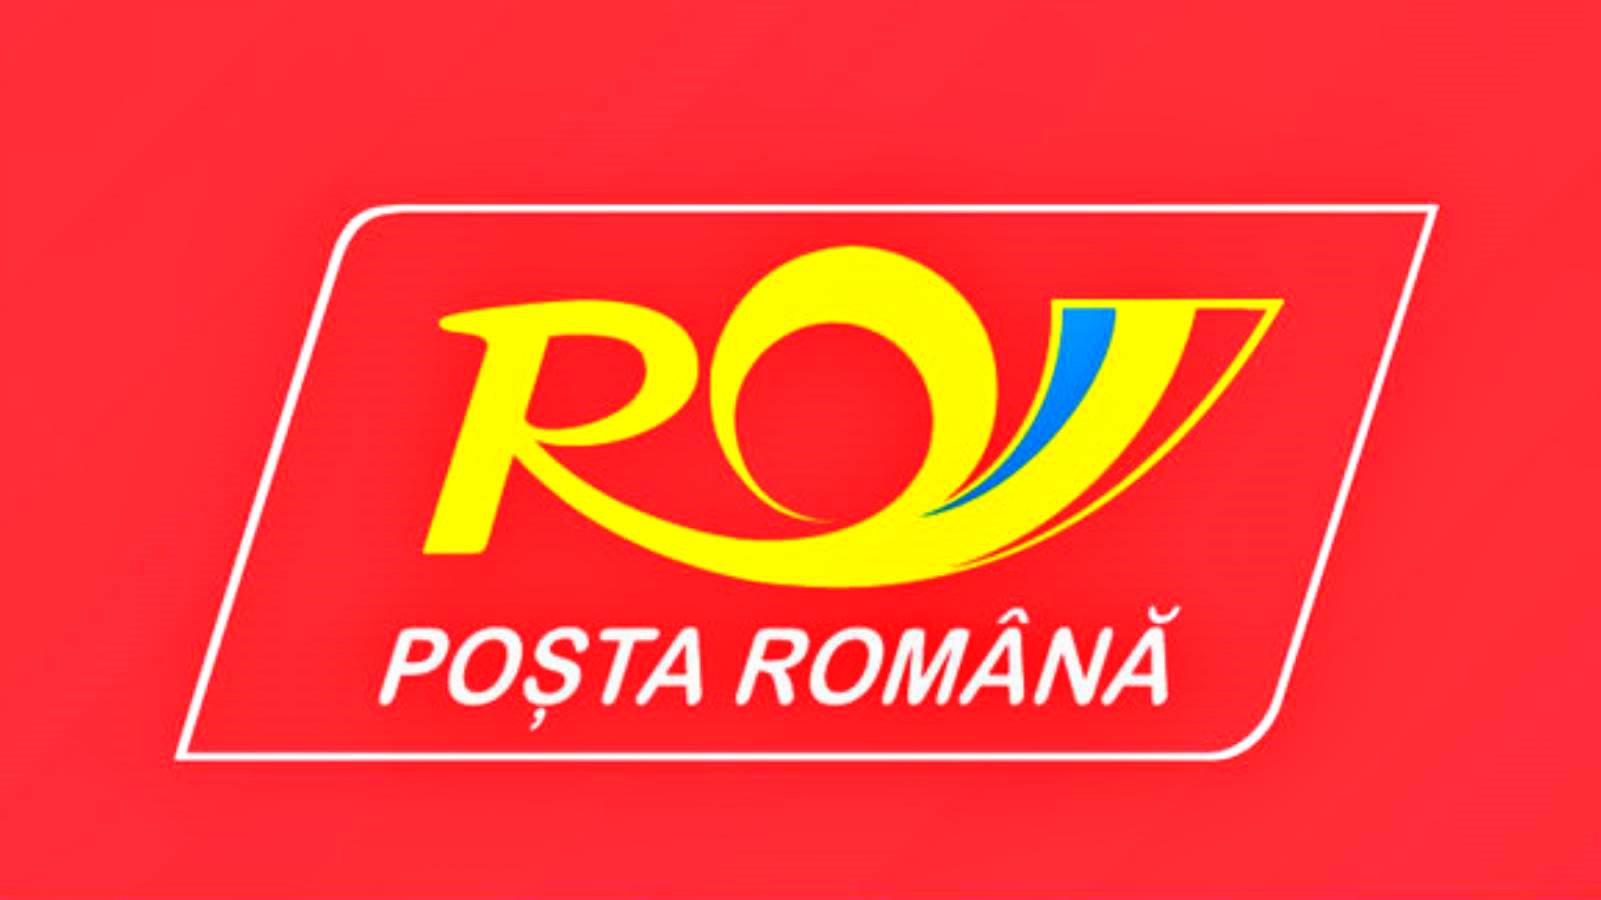 Elenco ufficiale delle poste rumene degli articoli di cui è vietata la spedizione